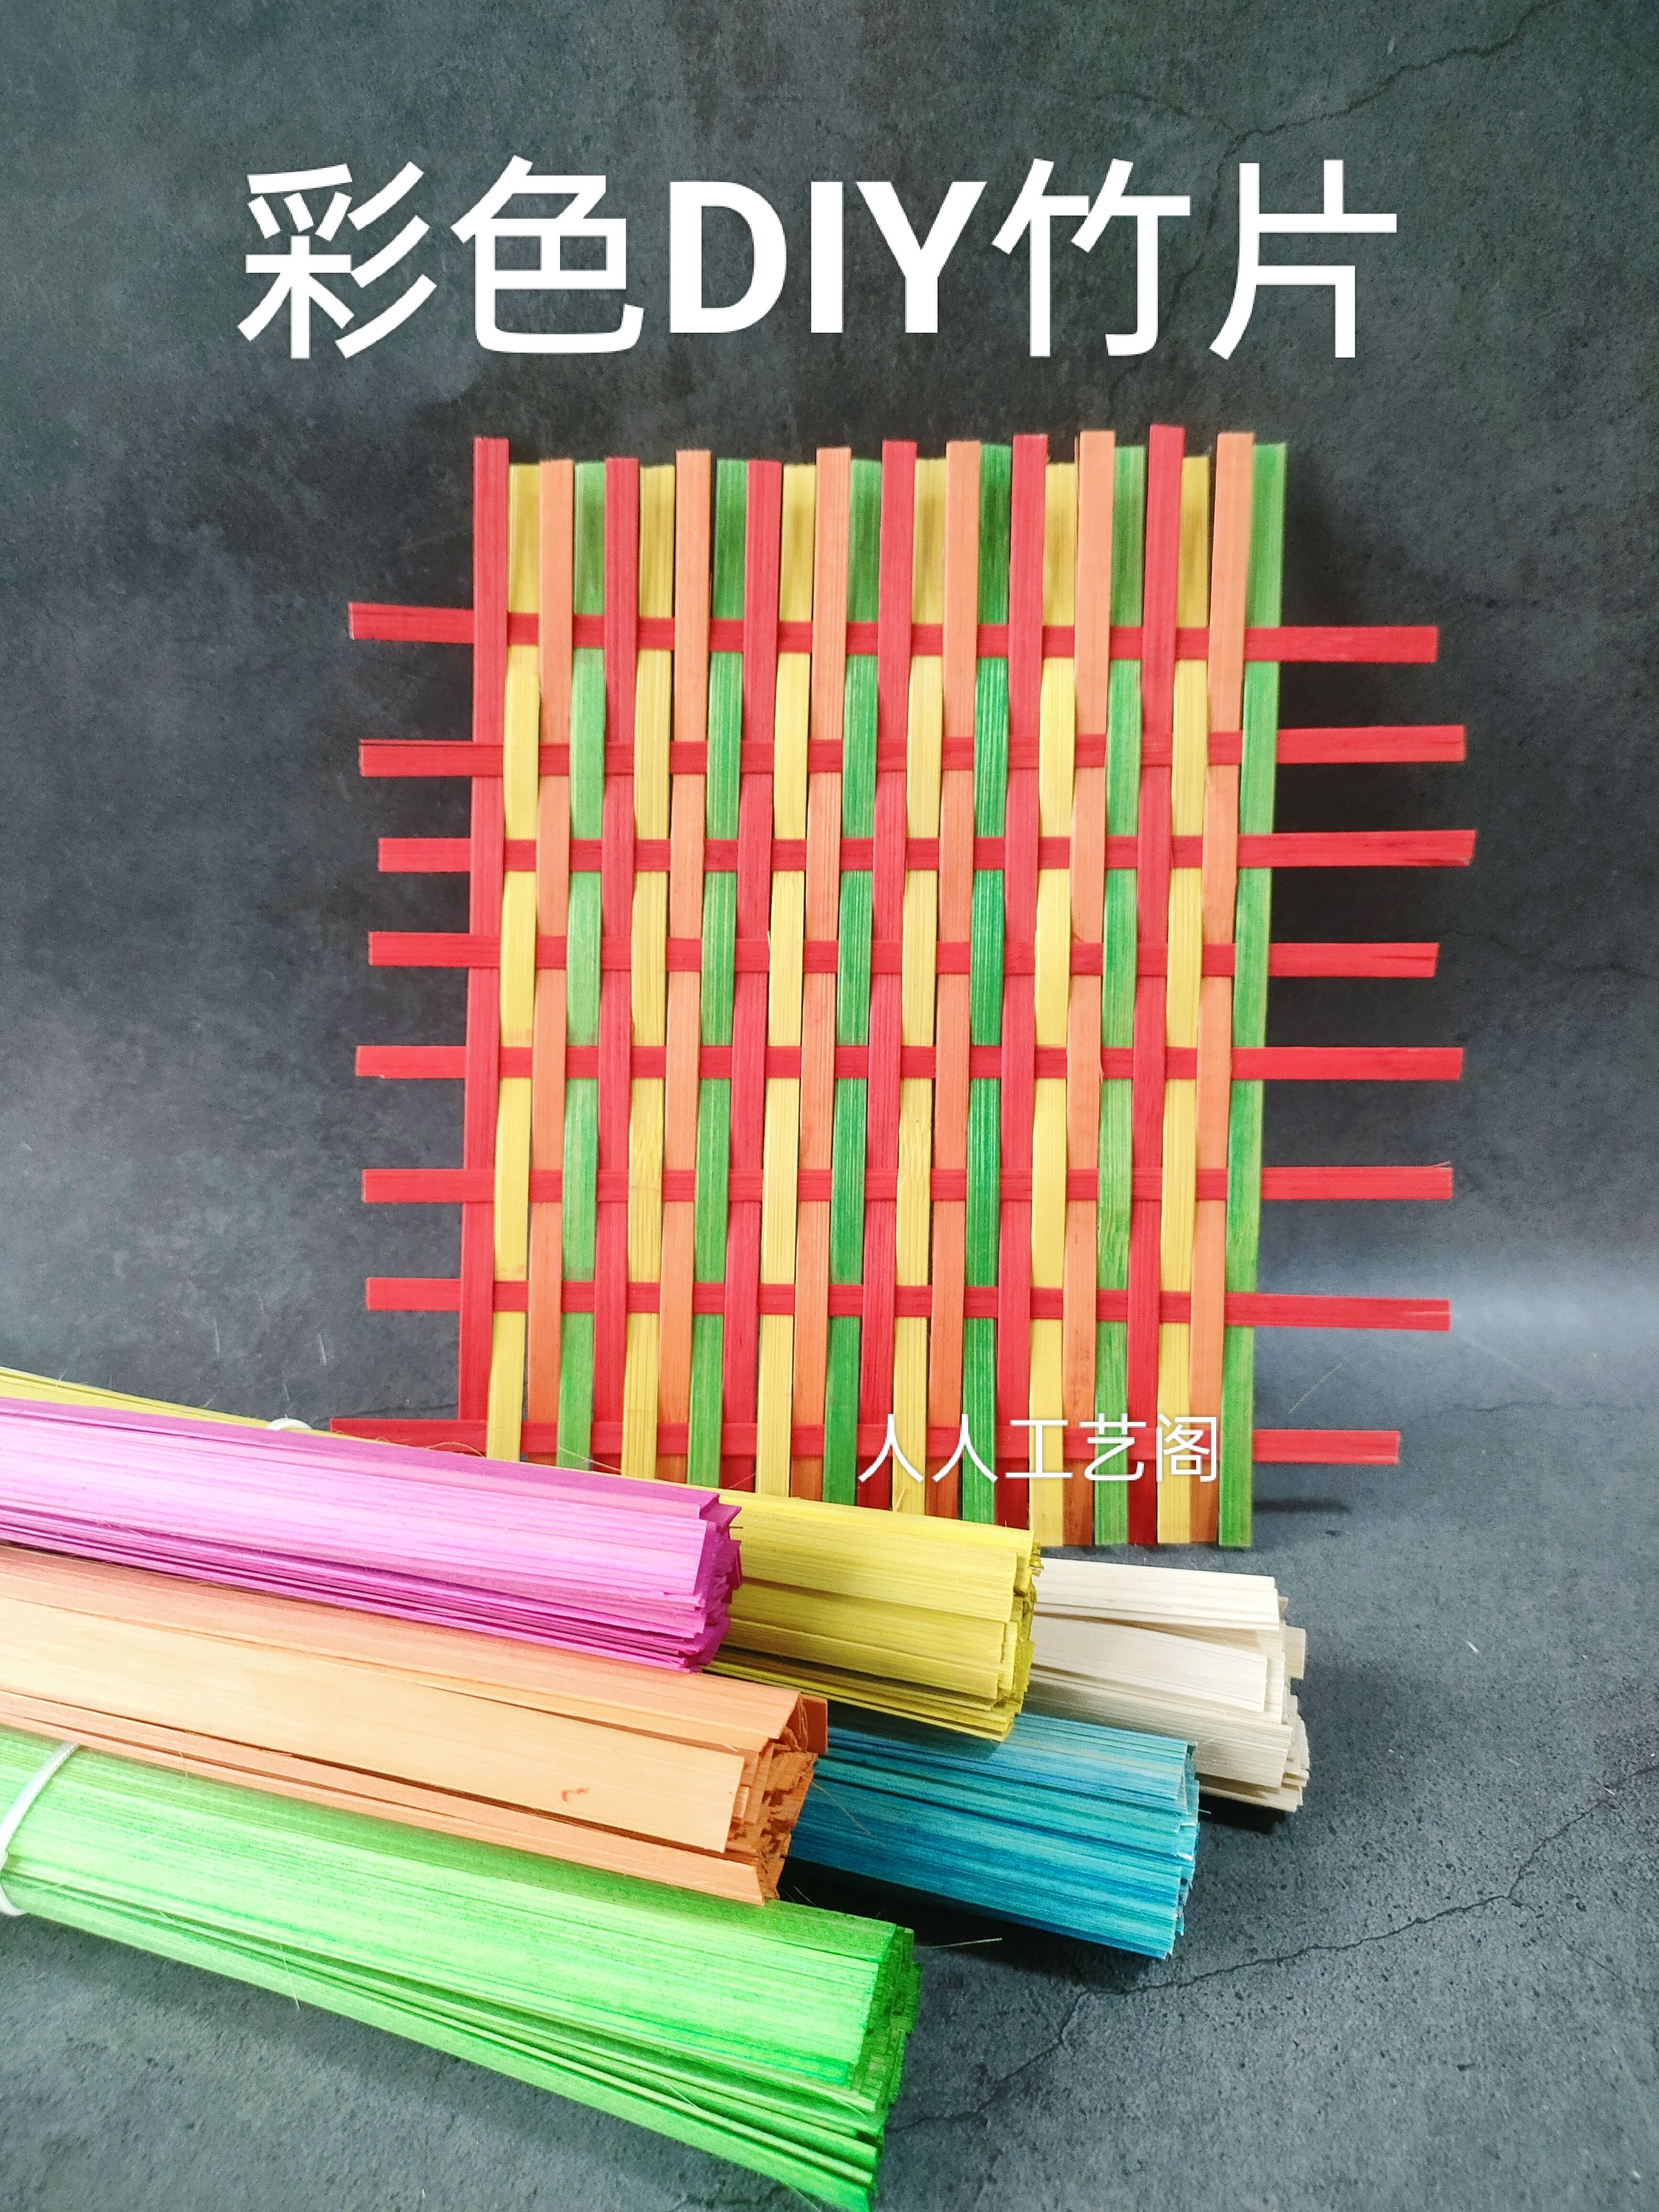 竹条竹编制品DIY材料包幼儿园手工材料竹排扇小船书签马风筝灯笼